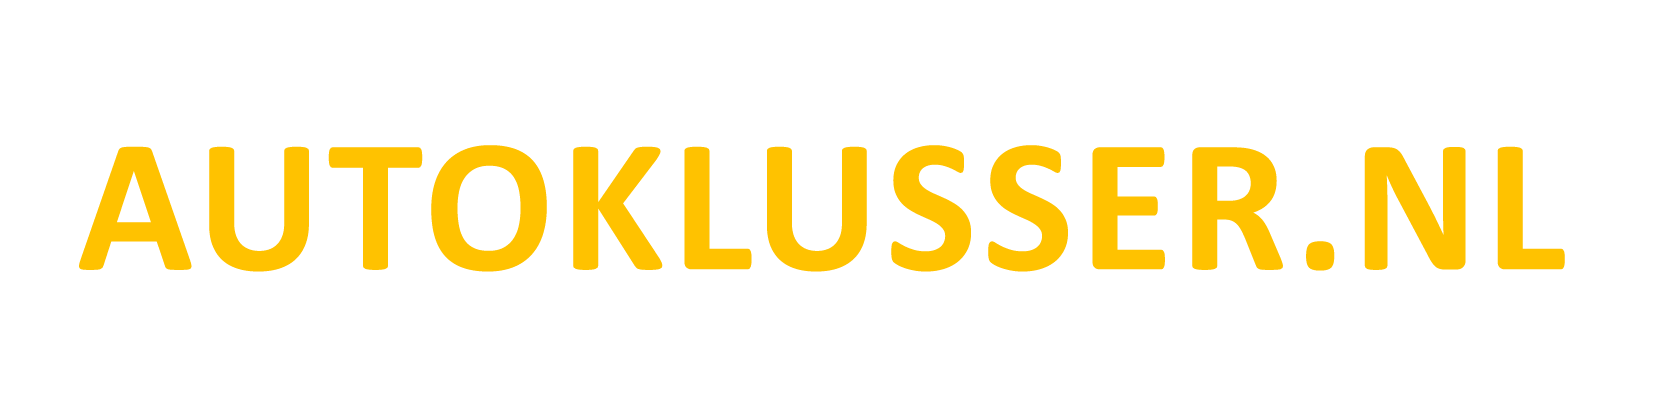 Autoklusser.nl